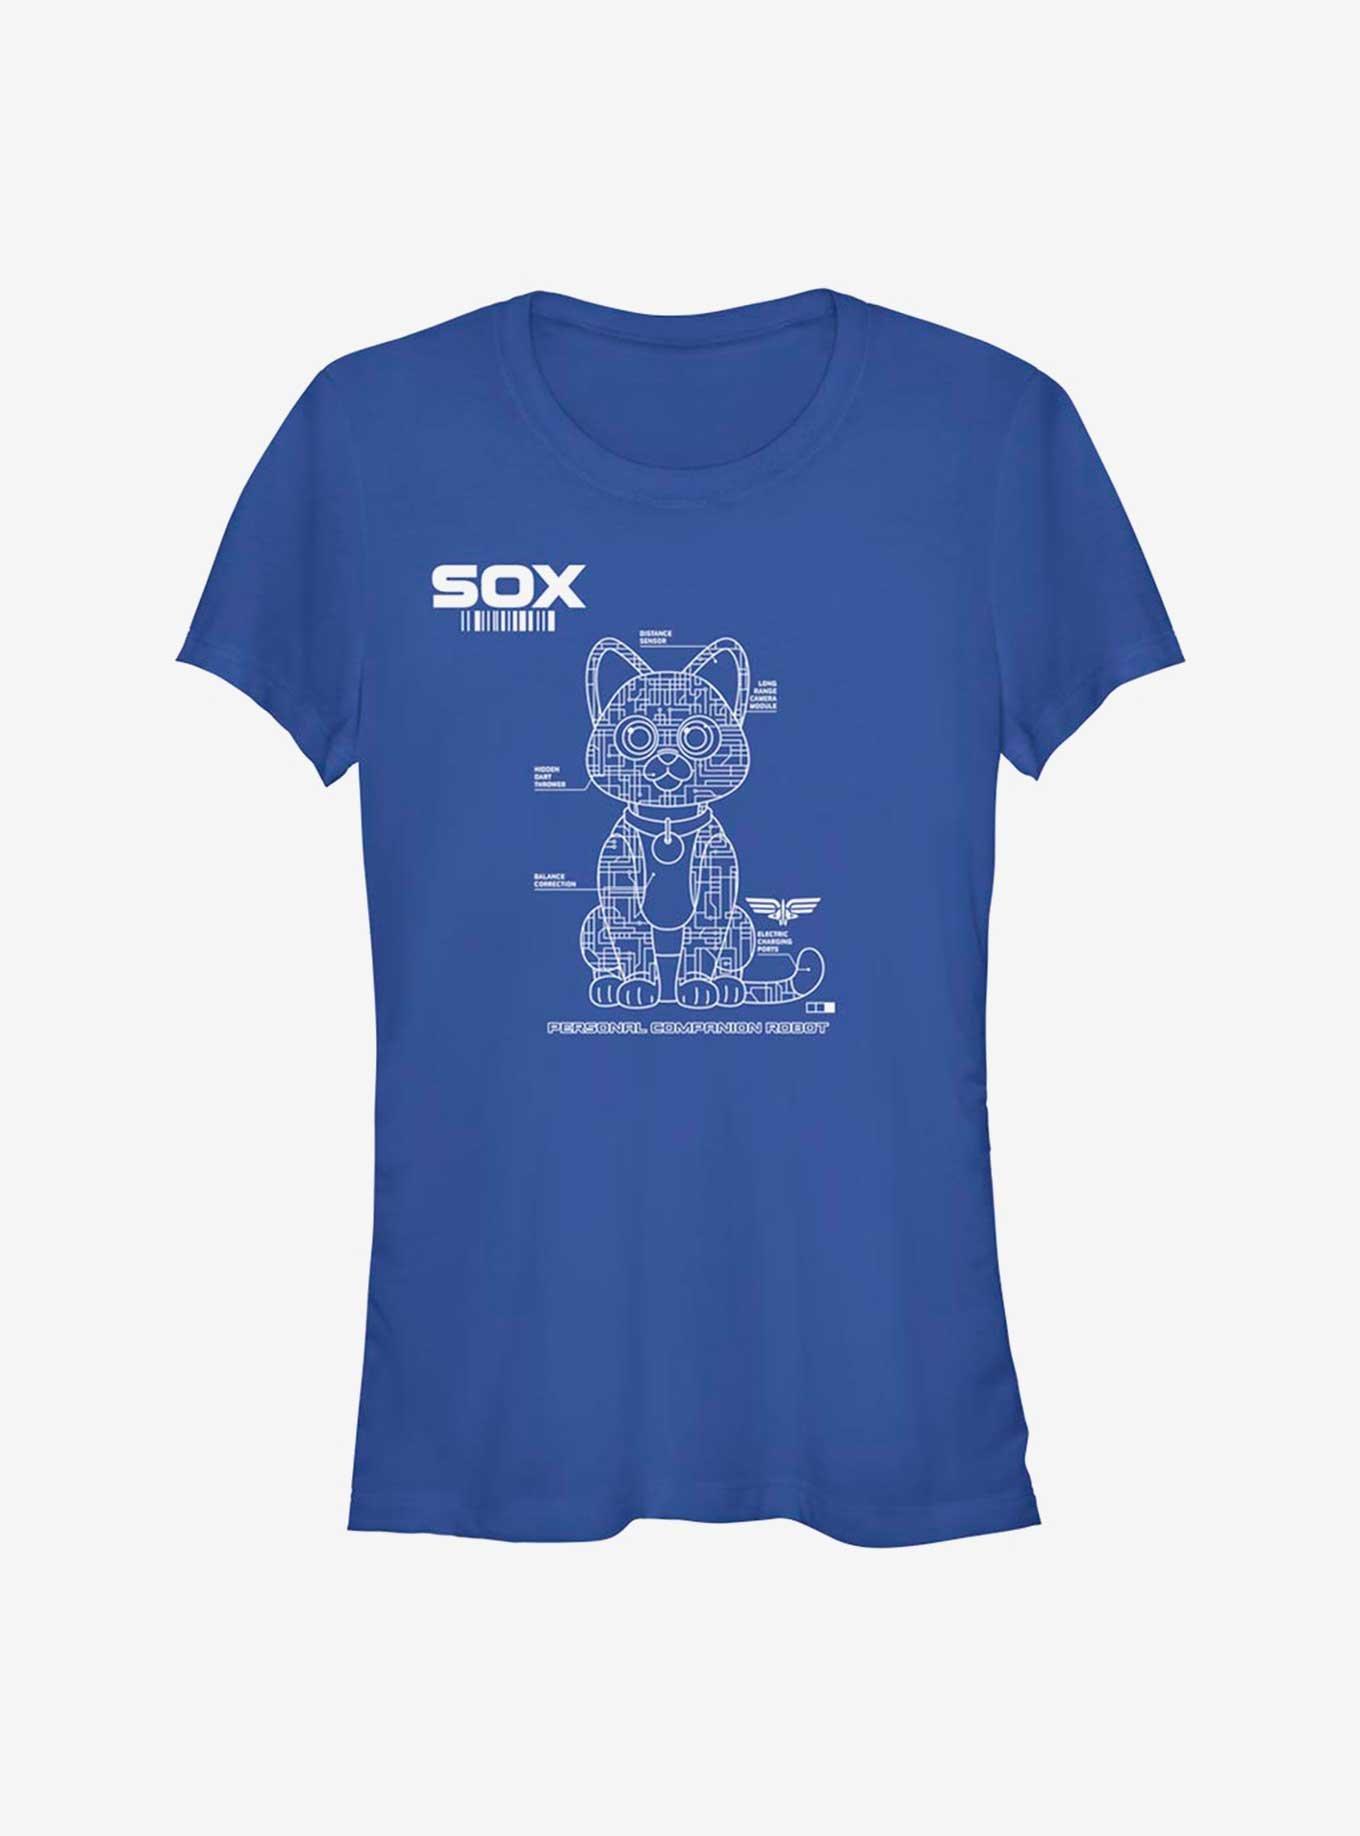 Disney Pixar Lightyear Sox Tech Girls T-Shirt